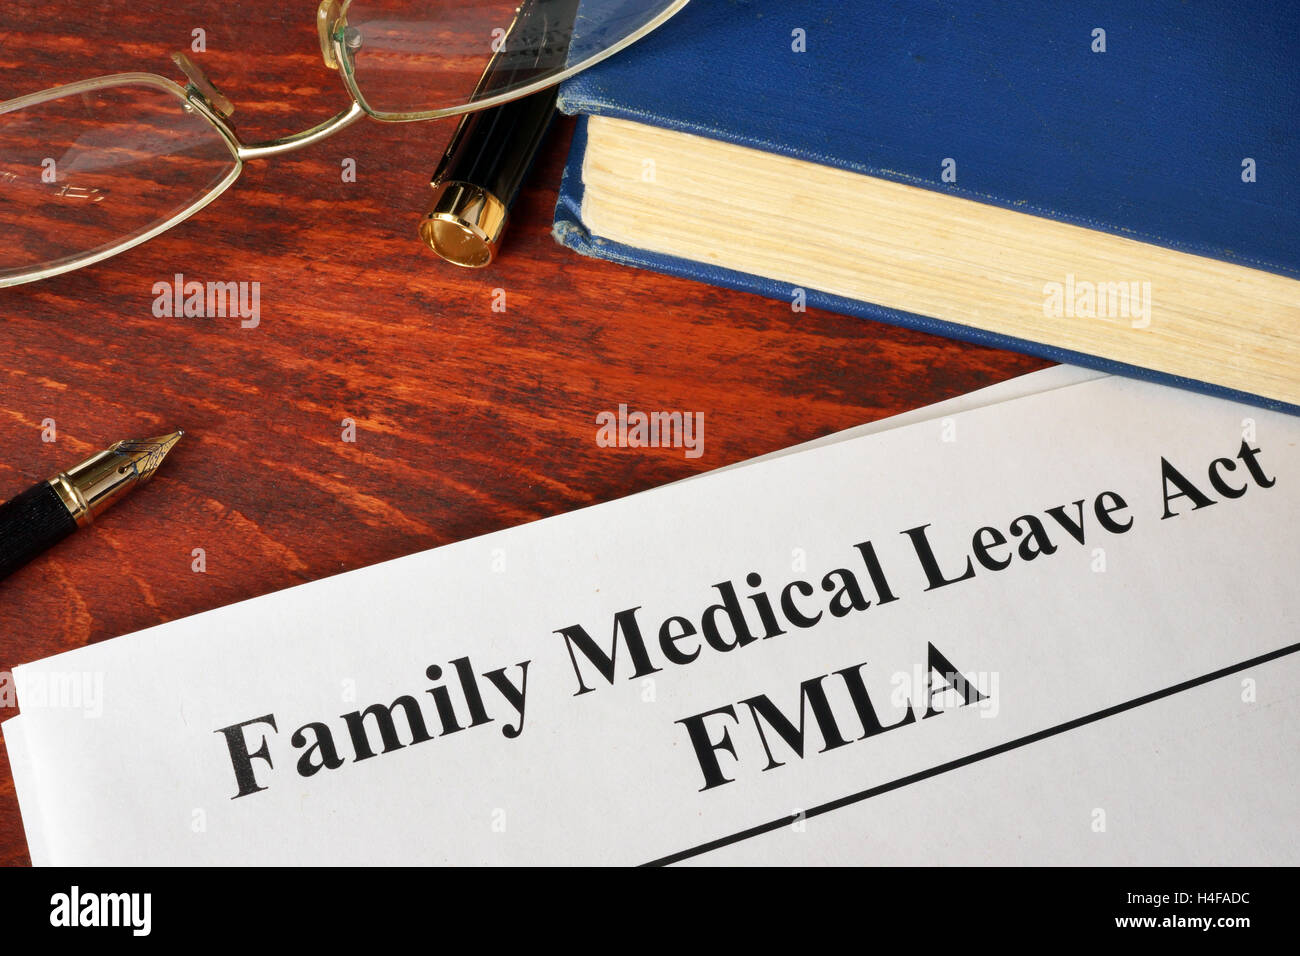 FMLA Family Medical Leave Act et un livre. Banque D'Images